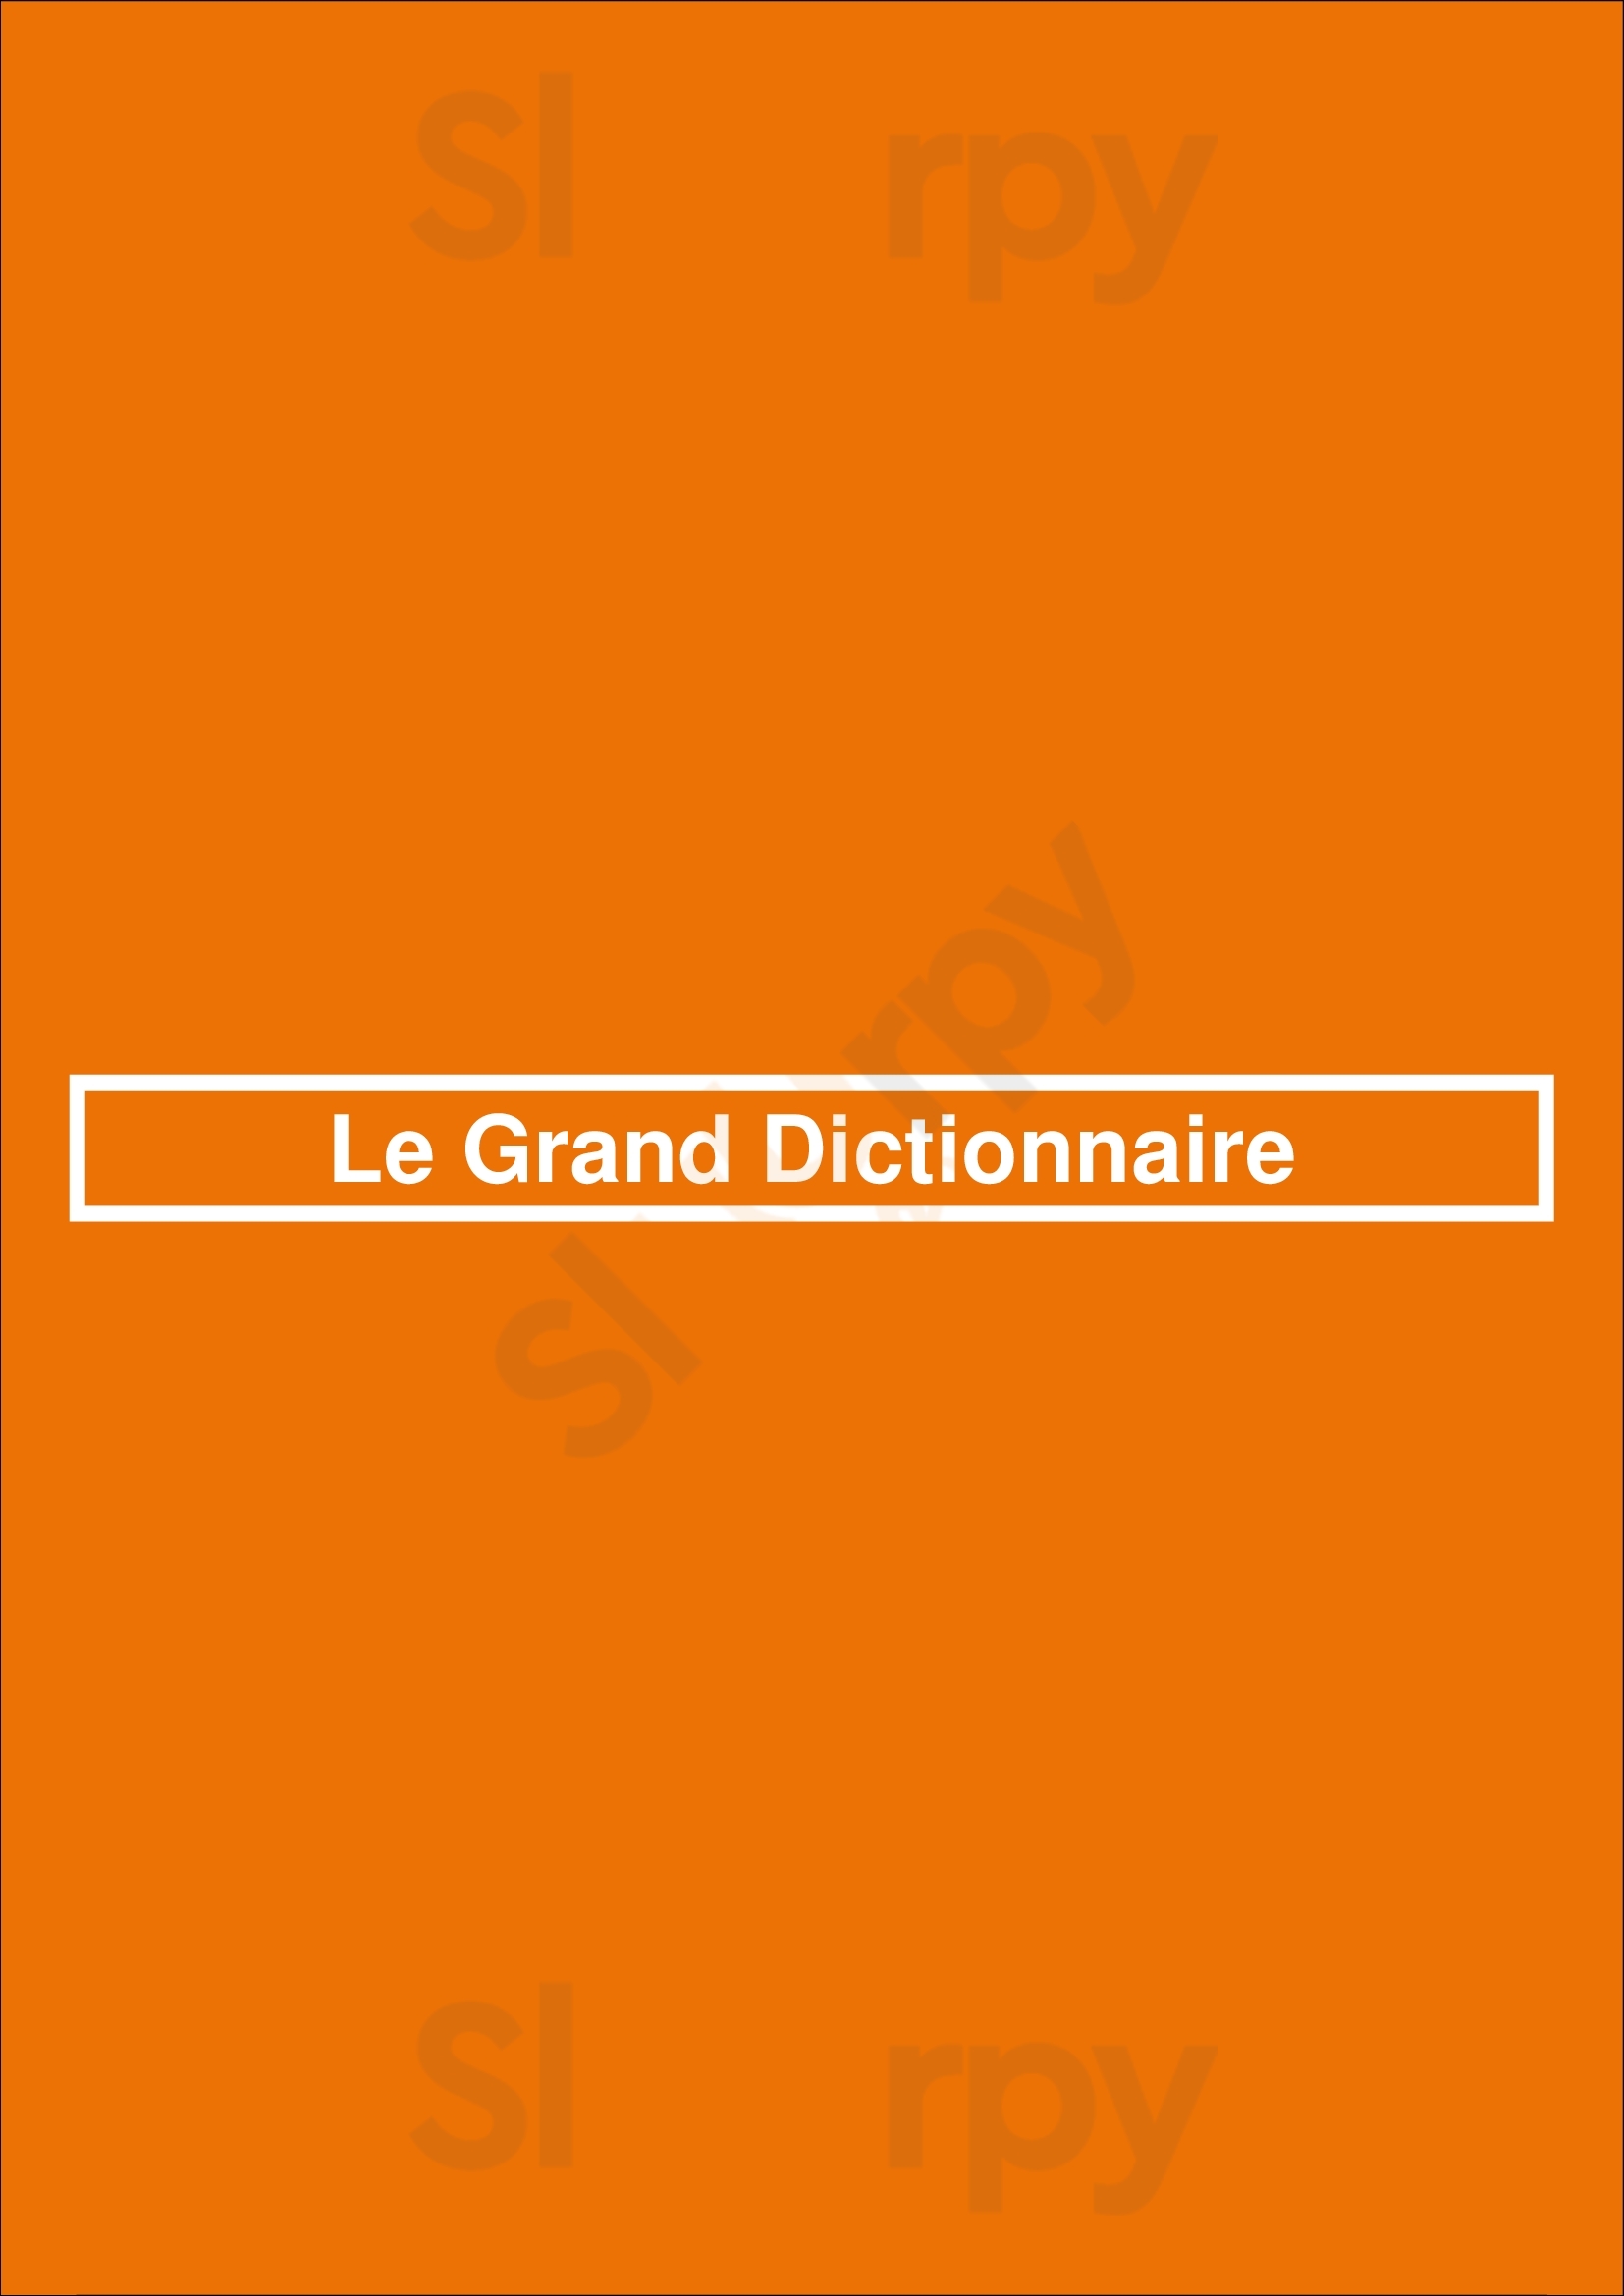 Le Grand Dictionnaire Paris Menu - 1